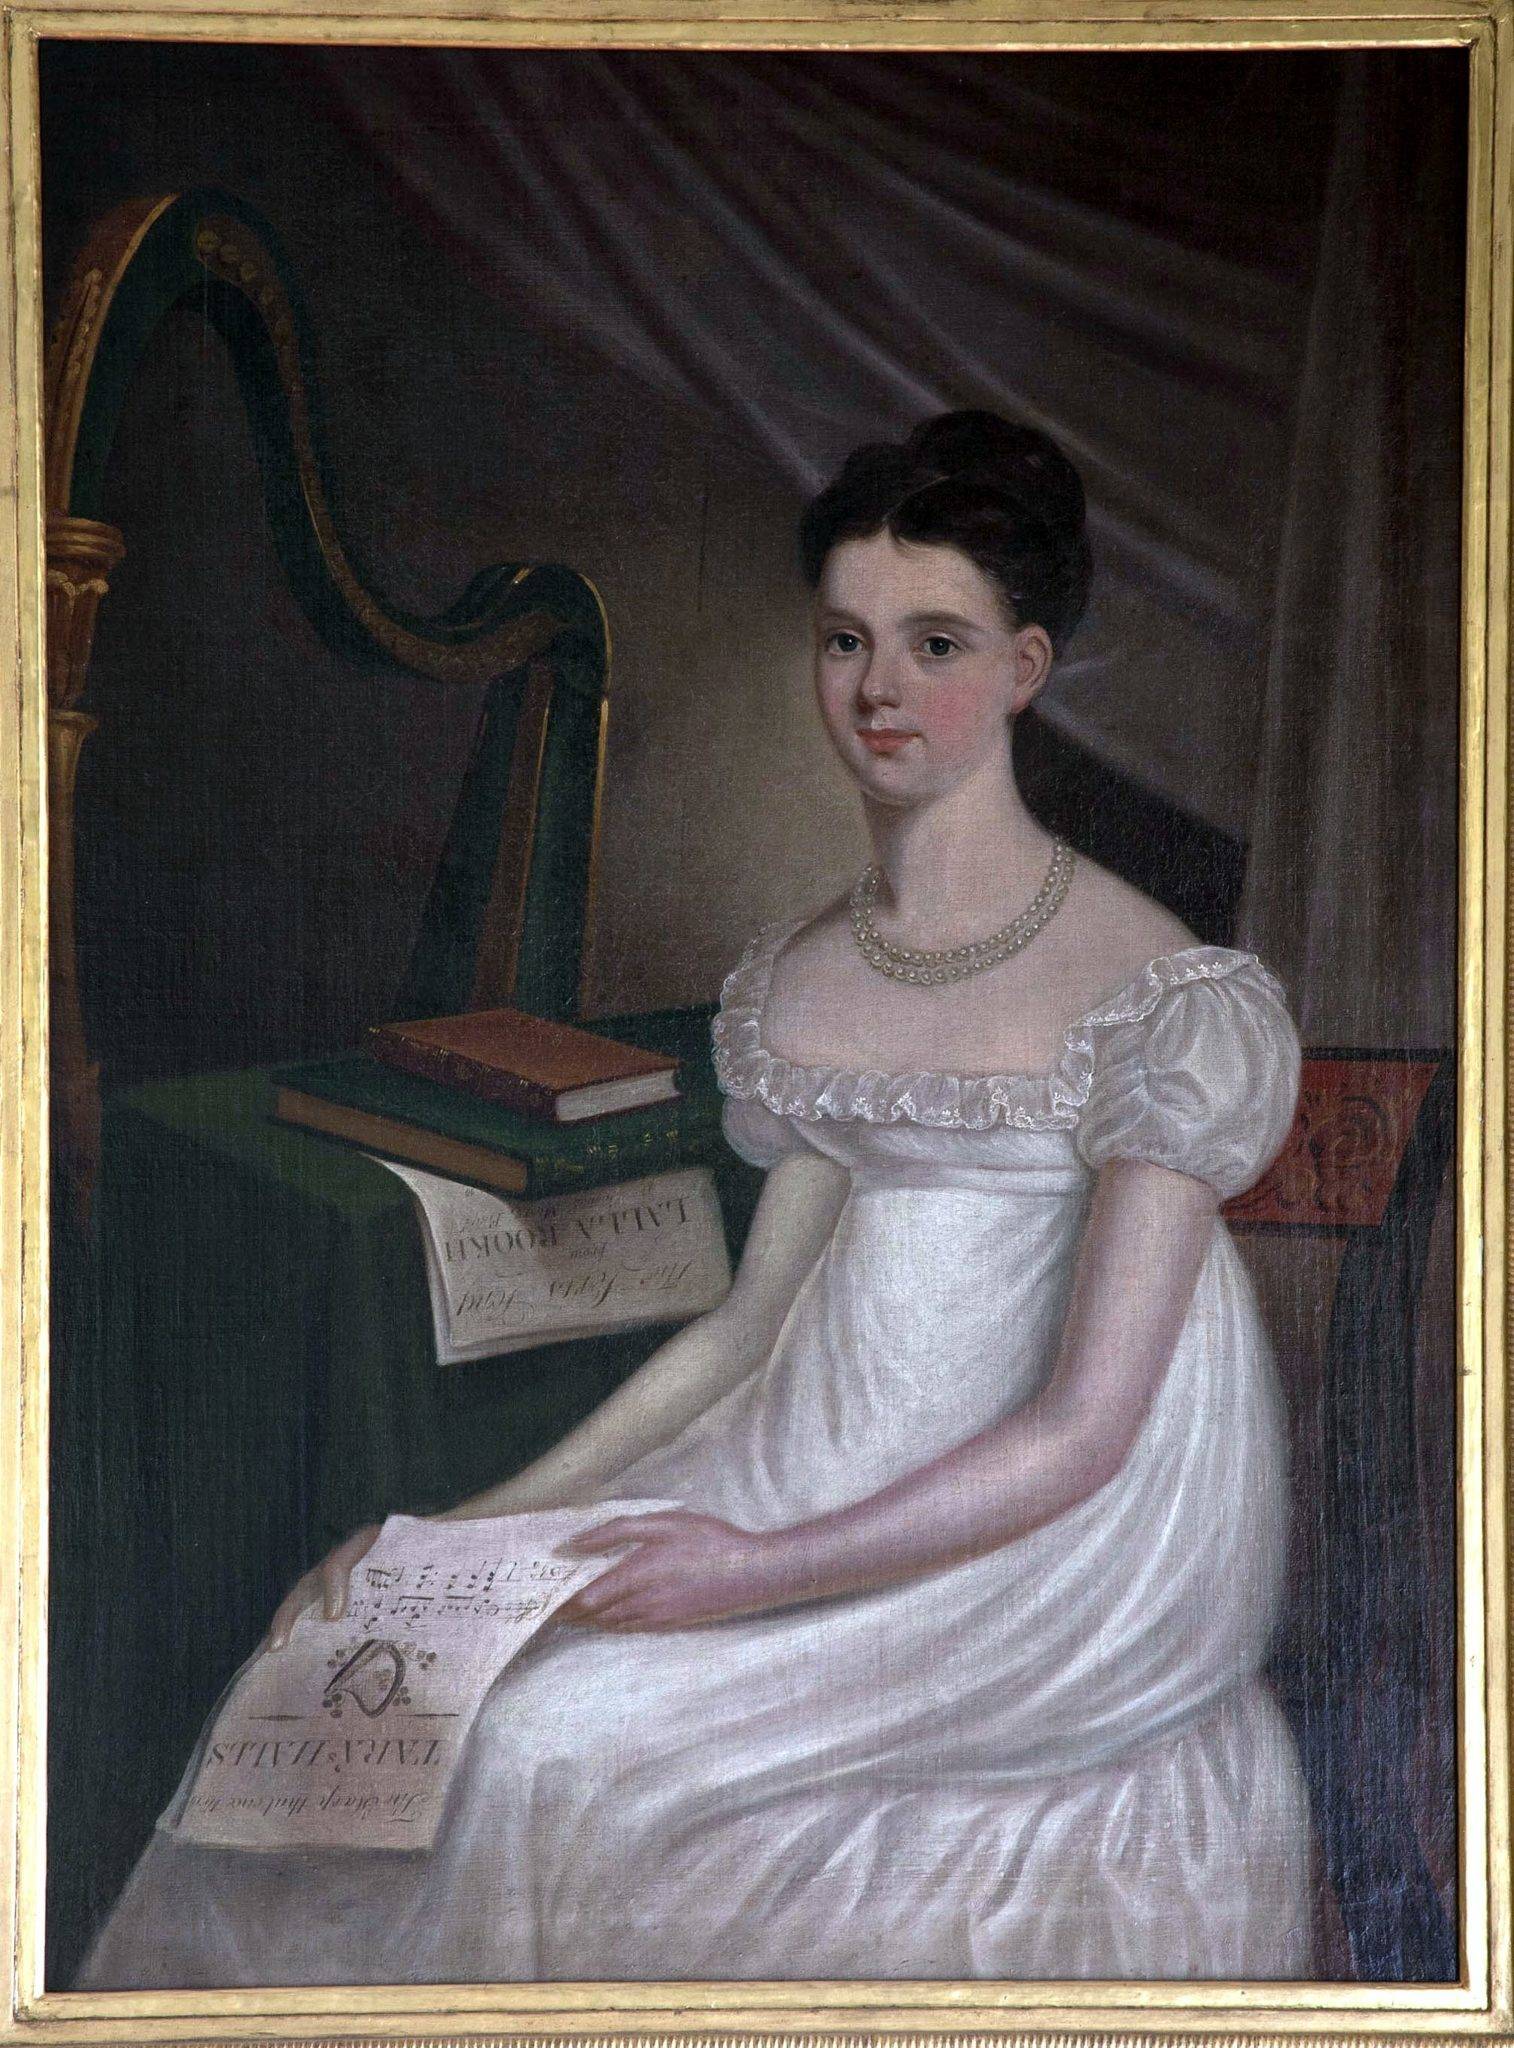 Ellen O’Connell by John Gubbins (fl 1820s). OPW